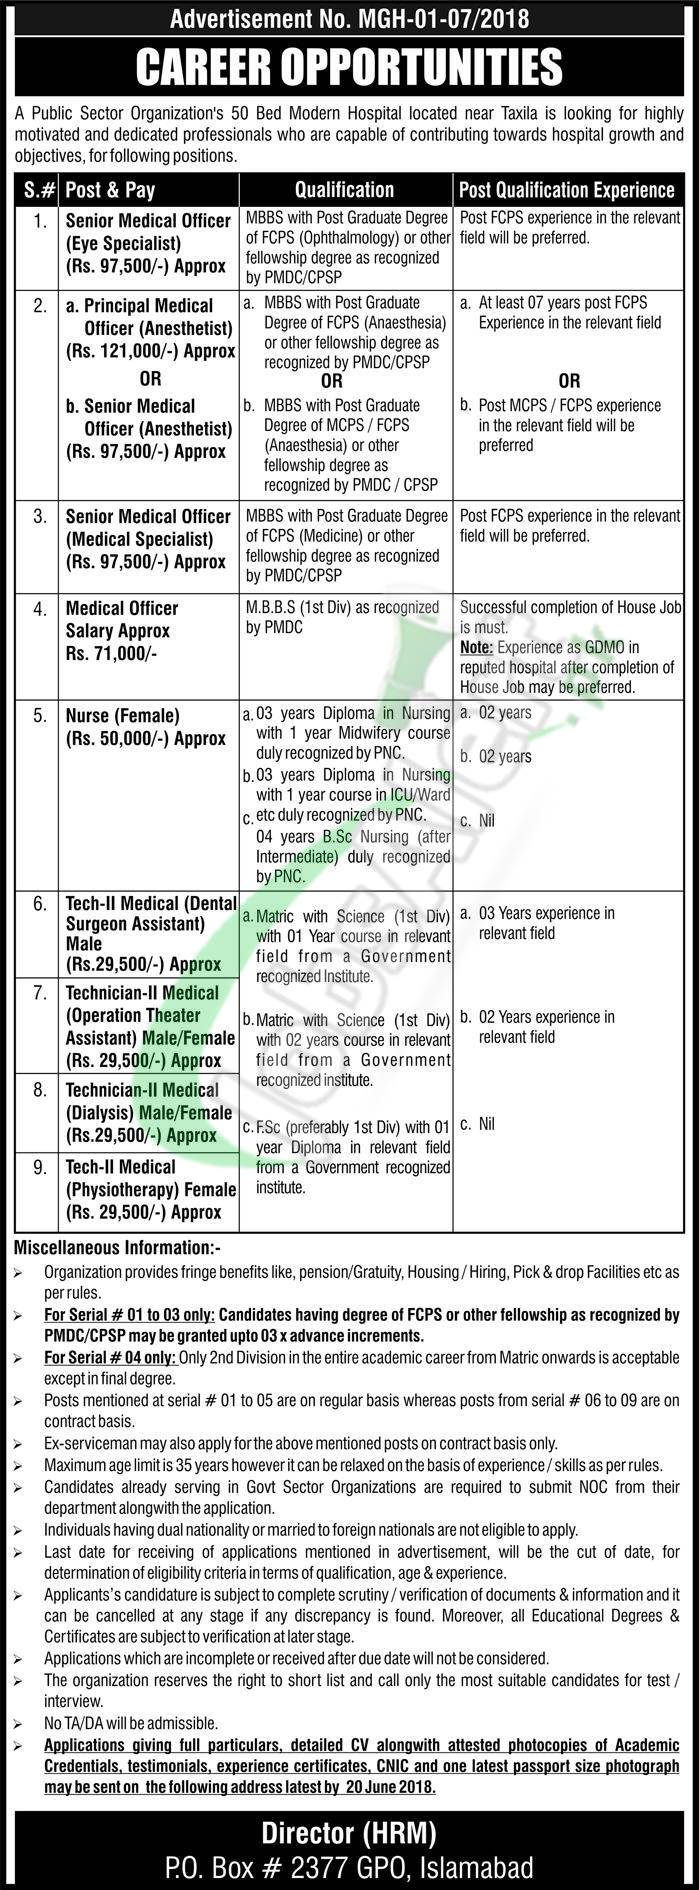 PO Box 2377 GPO Islamabad Jobs 2018